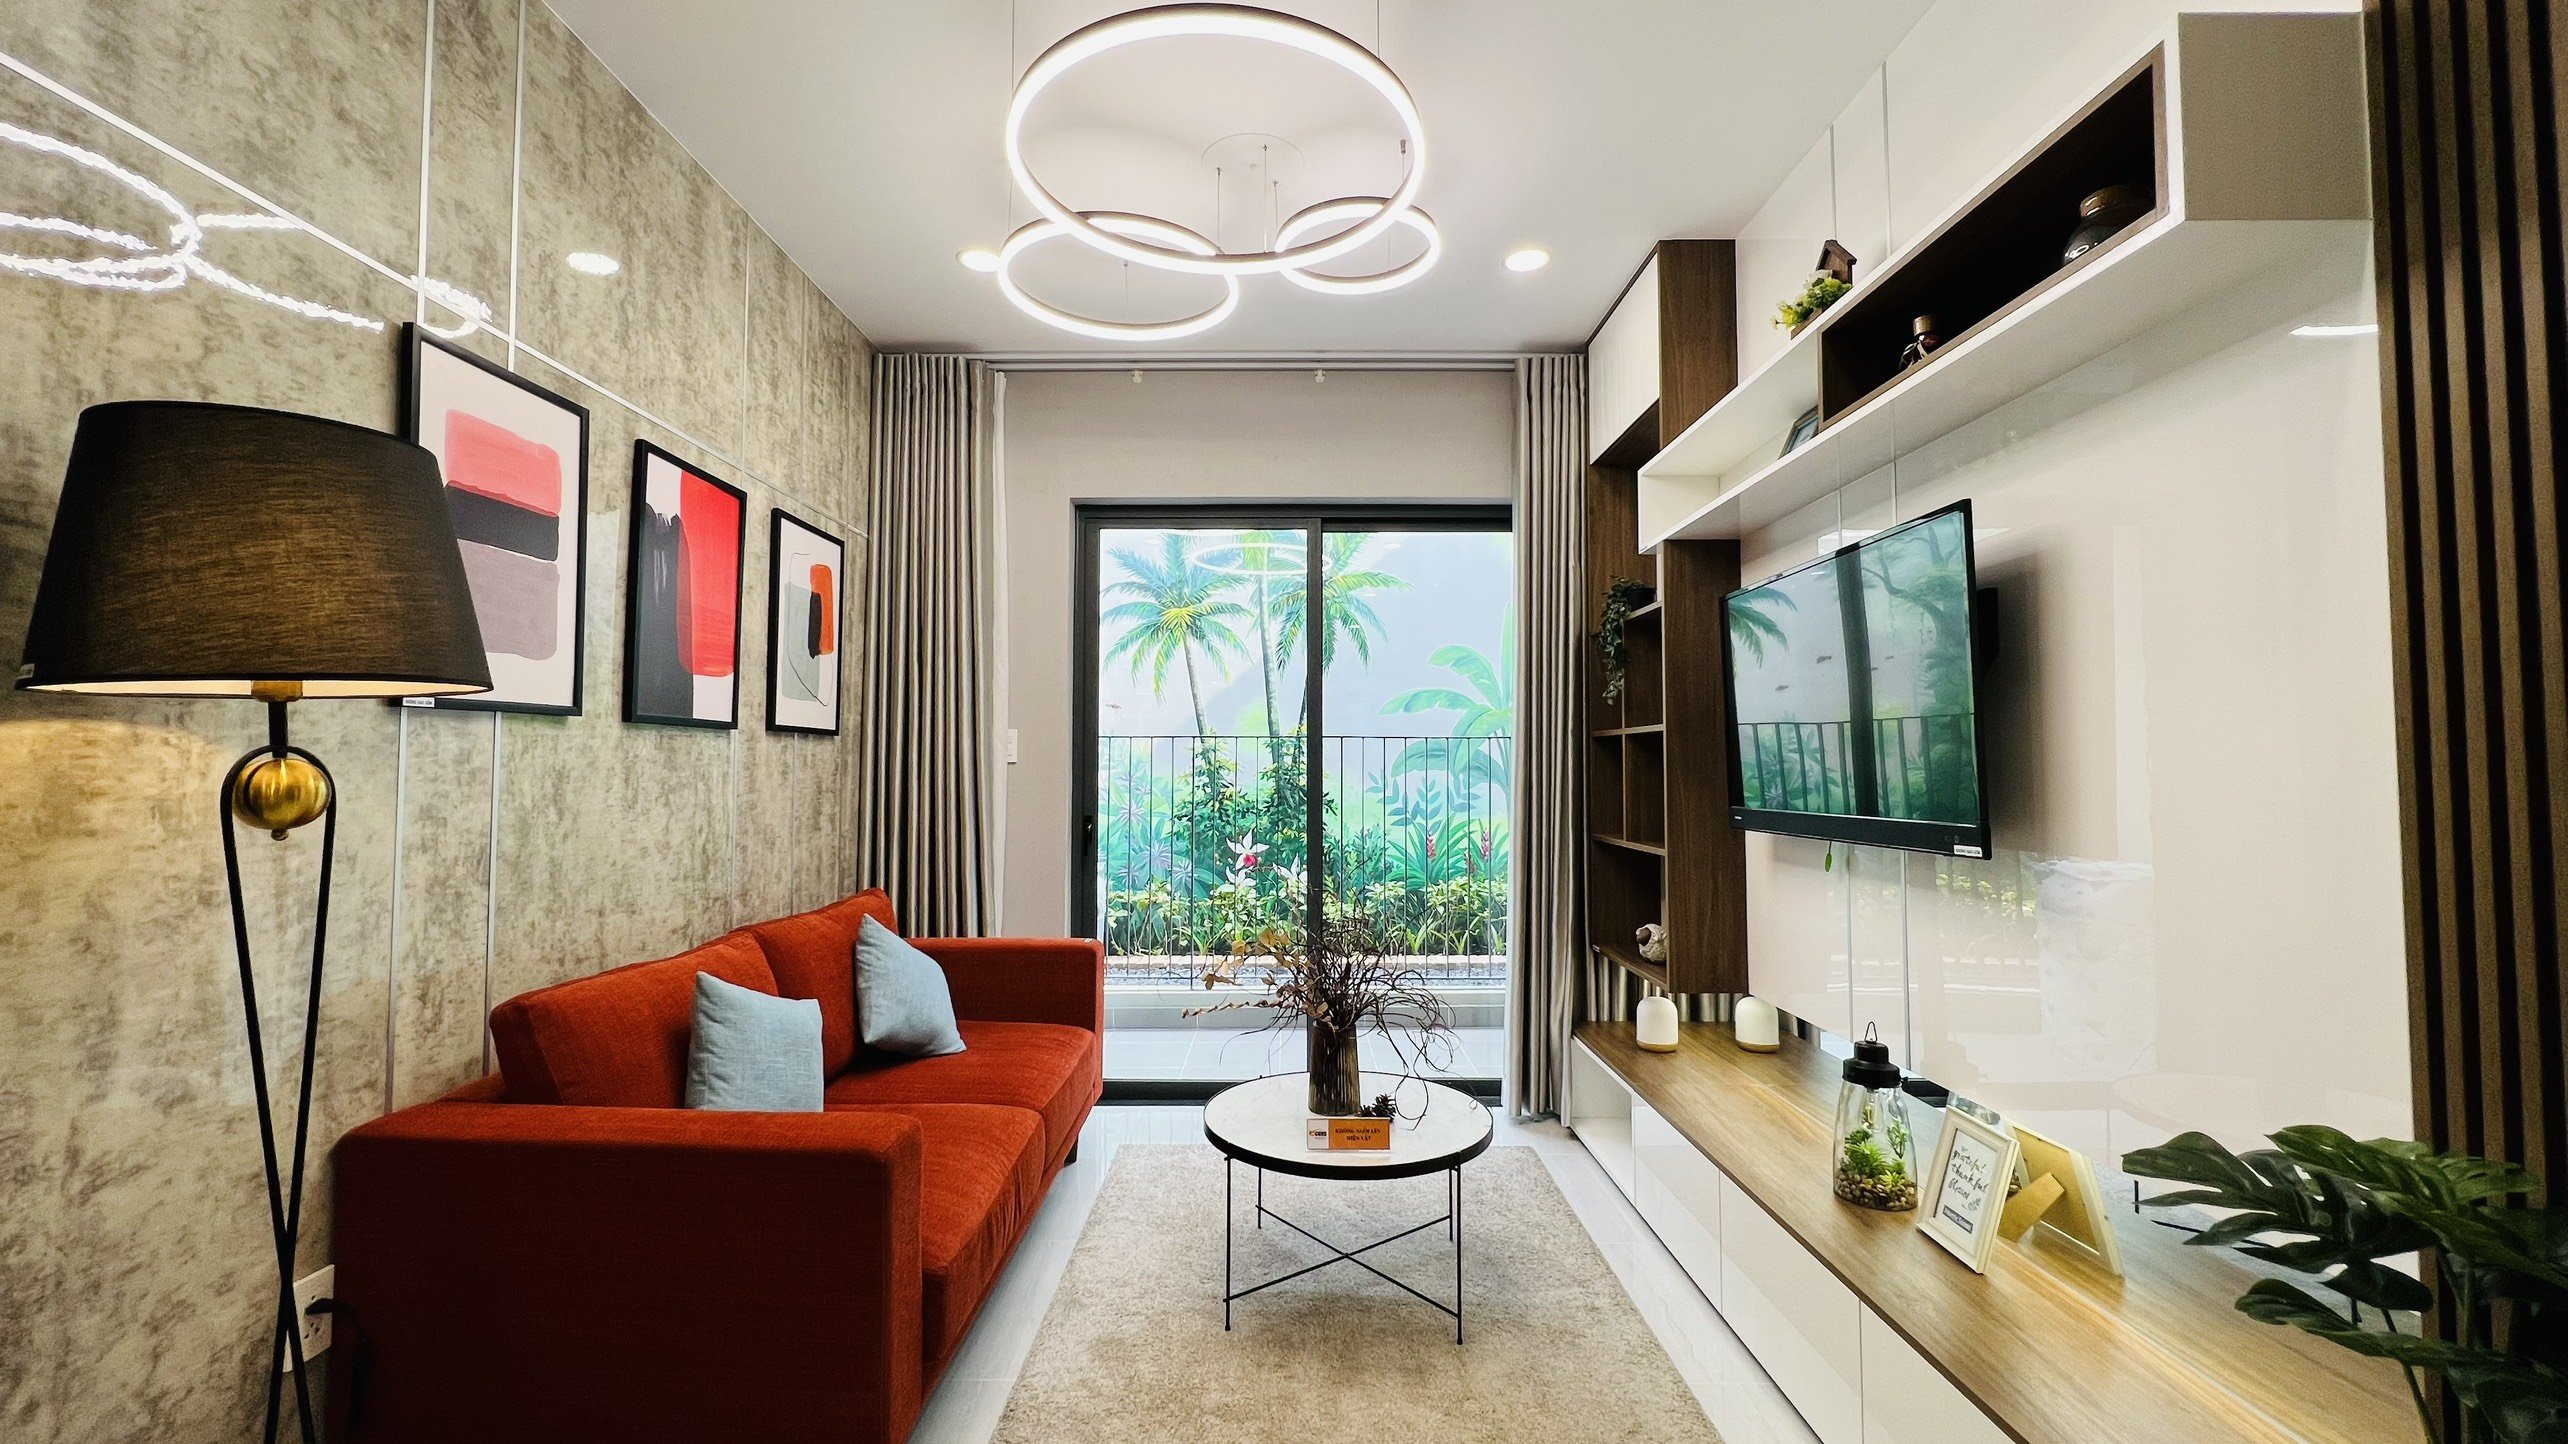 Cơ hội sở hữu căn hộ 1 tỷ 6 ngay mặt tiền – Phạm Văn Đồng chỉ với 250 triệu 4